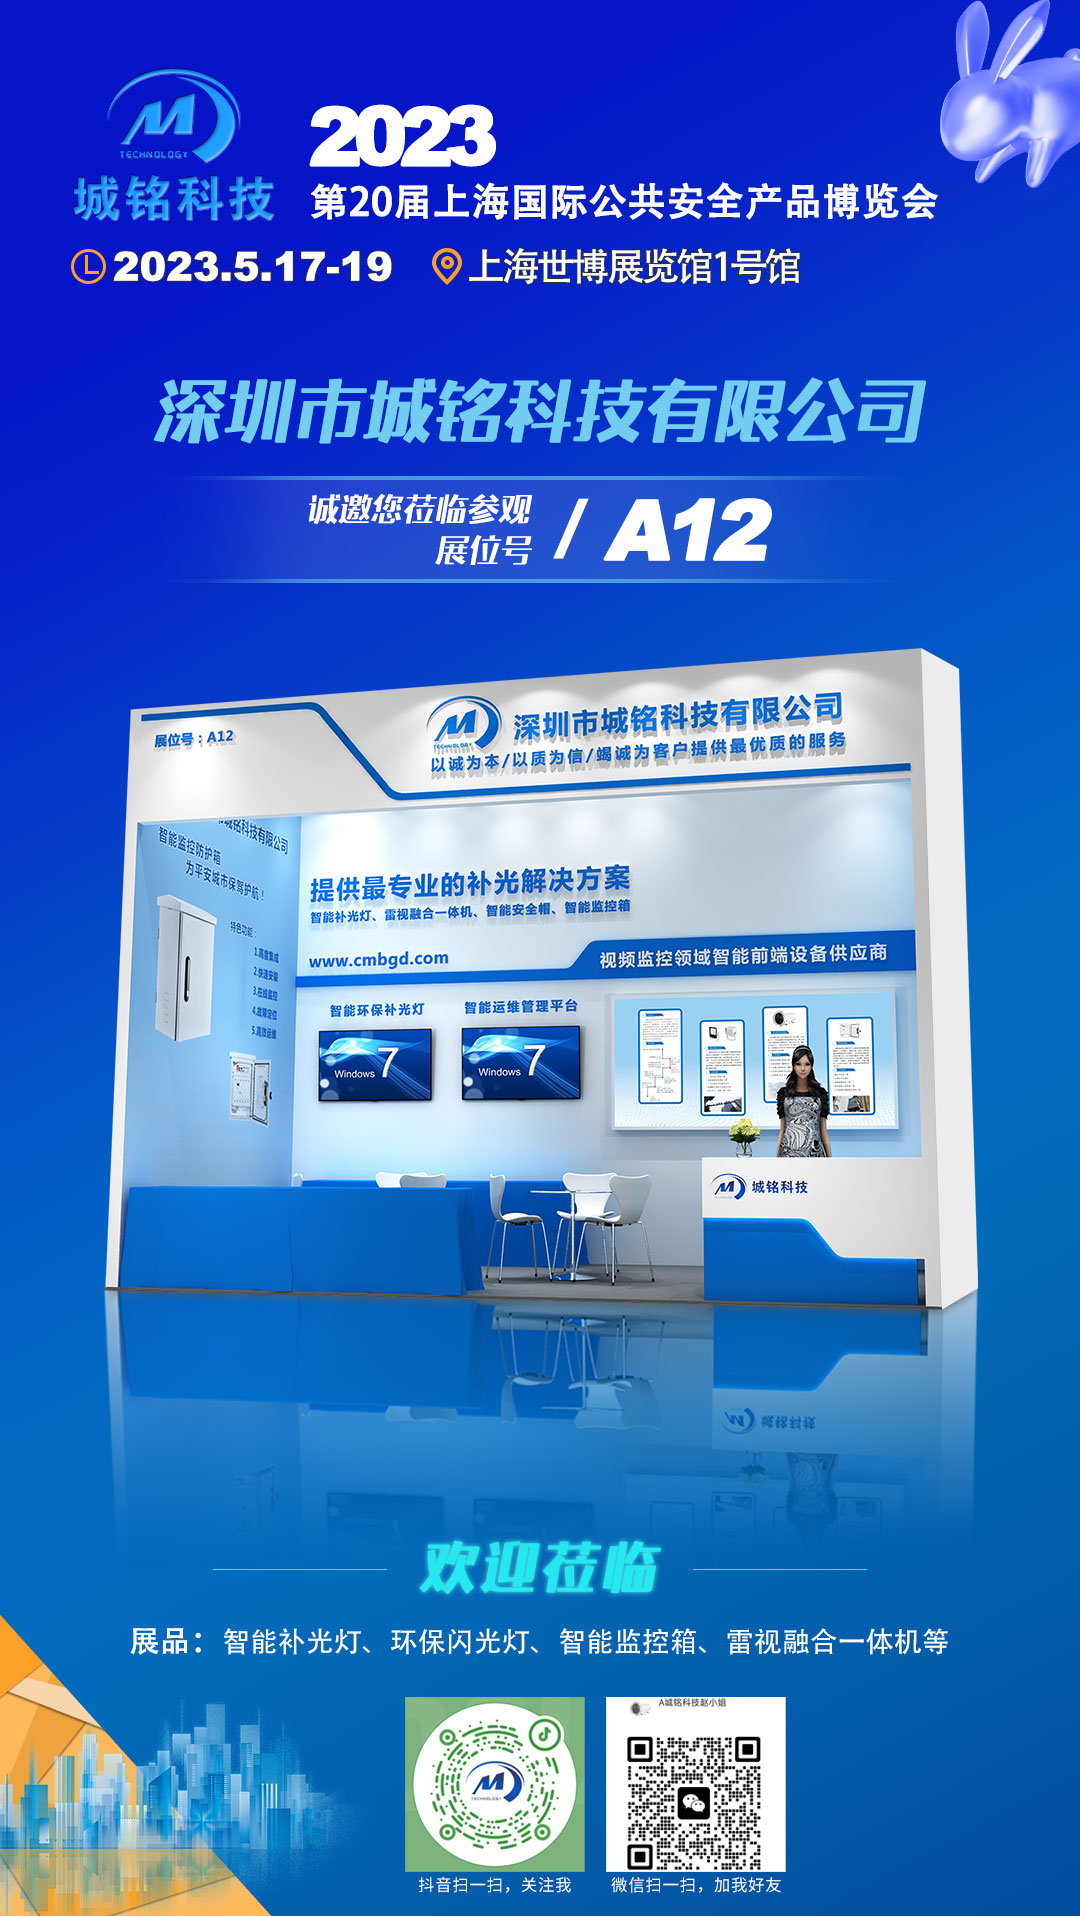 2023年第二十屆上海國際公共安全產品博覽會-城銘科技邀您相約A12展位